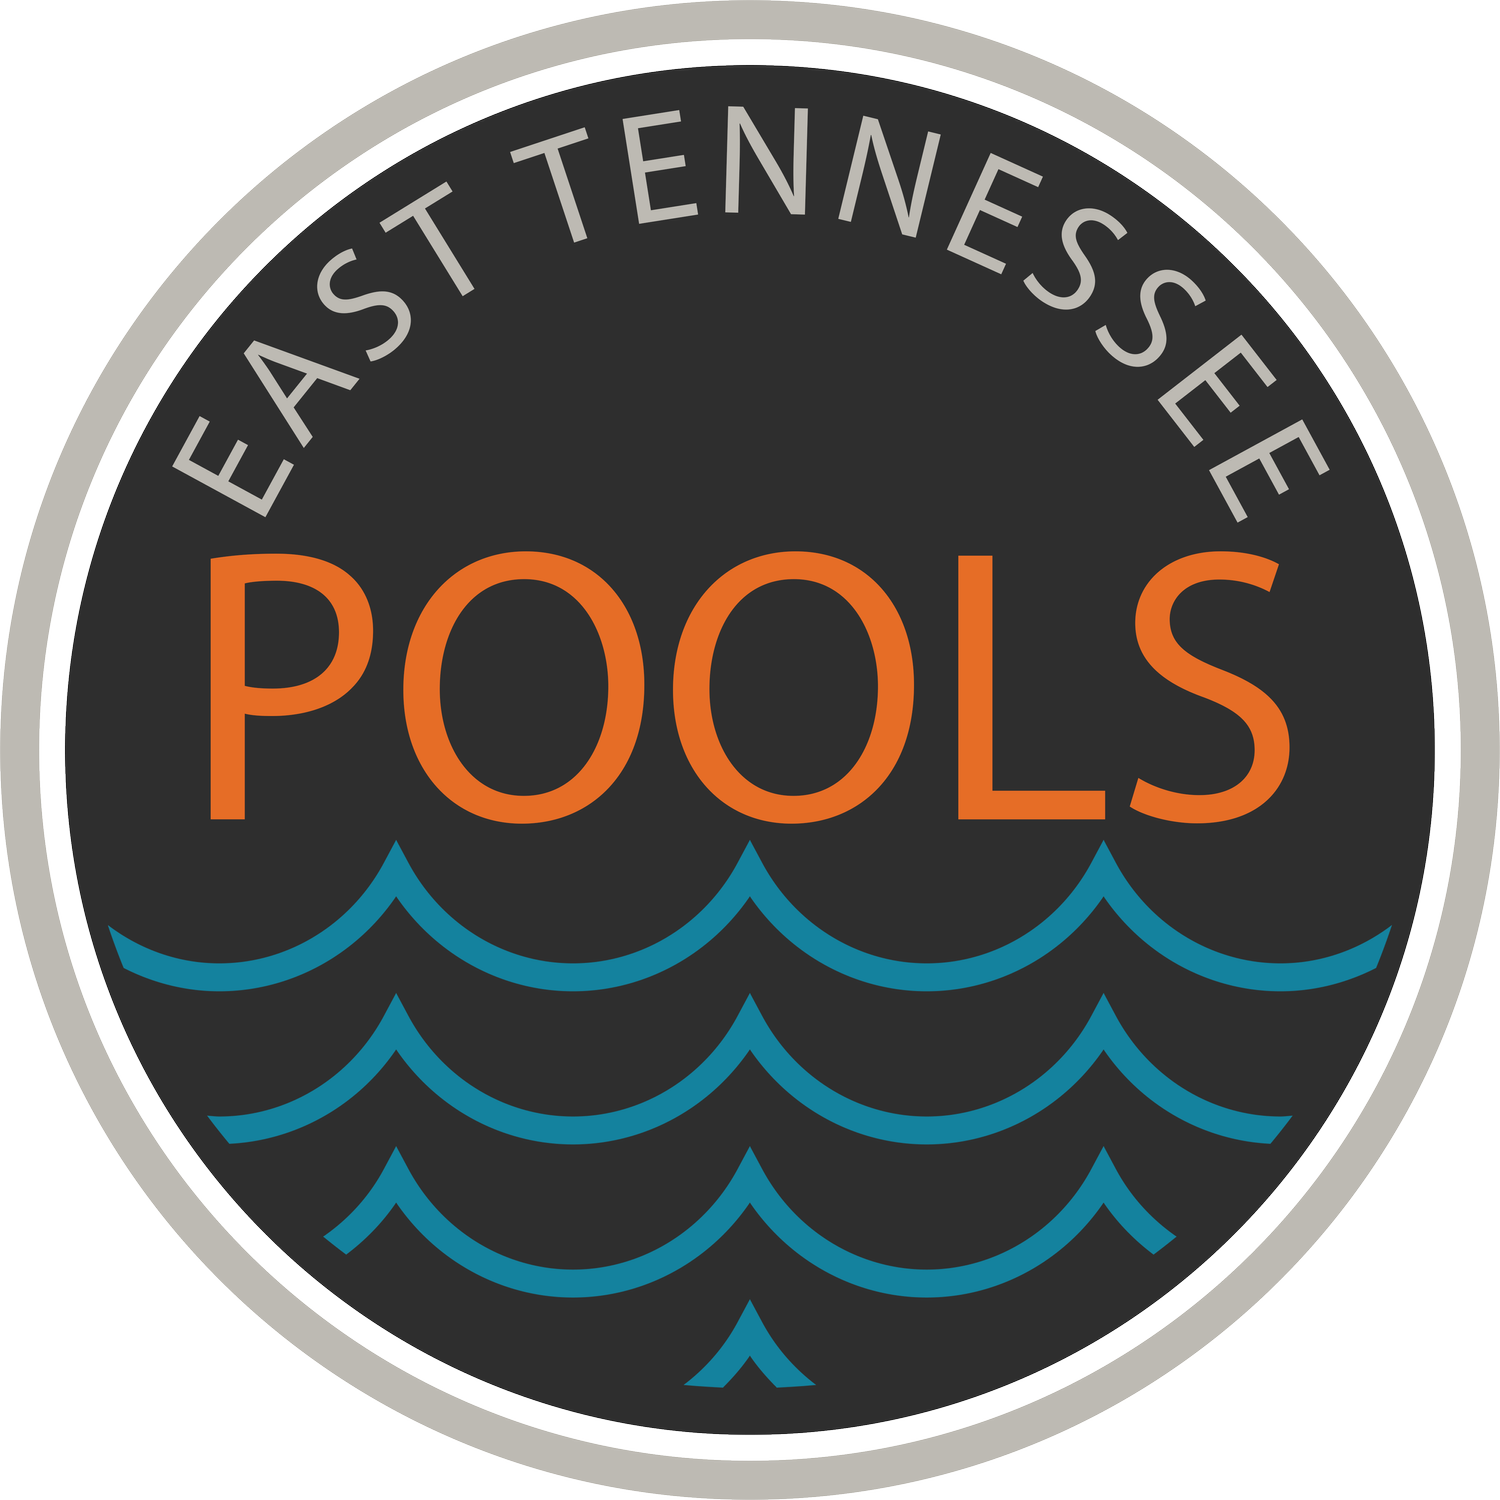 East Tennessee Pools